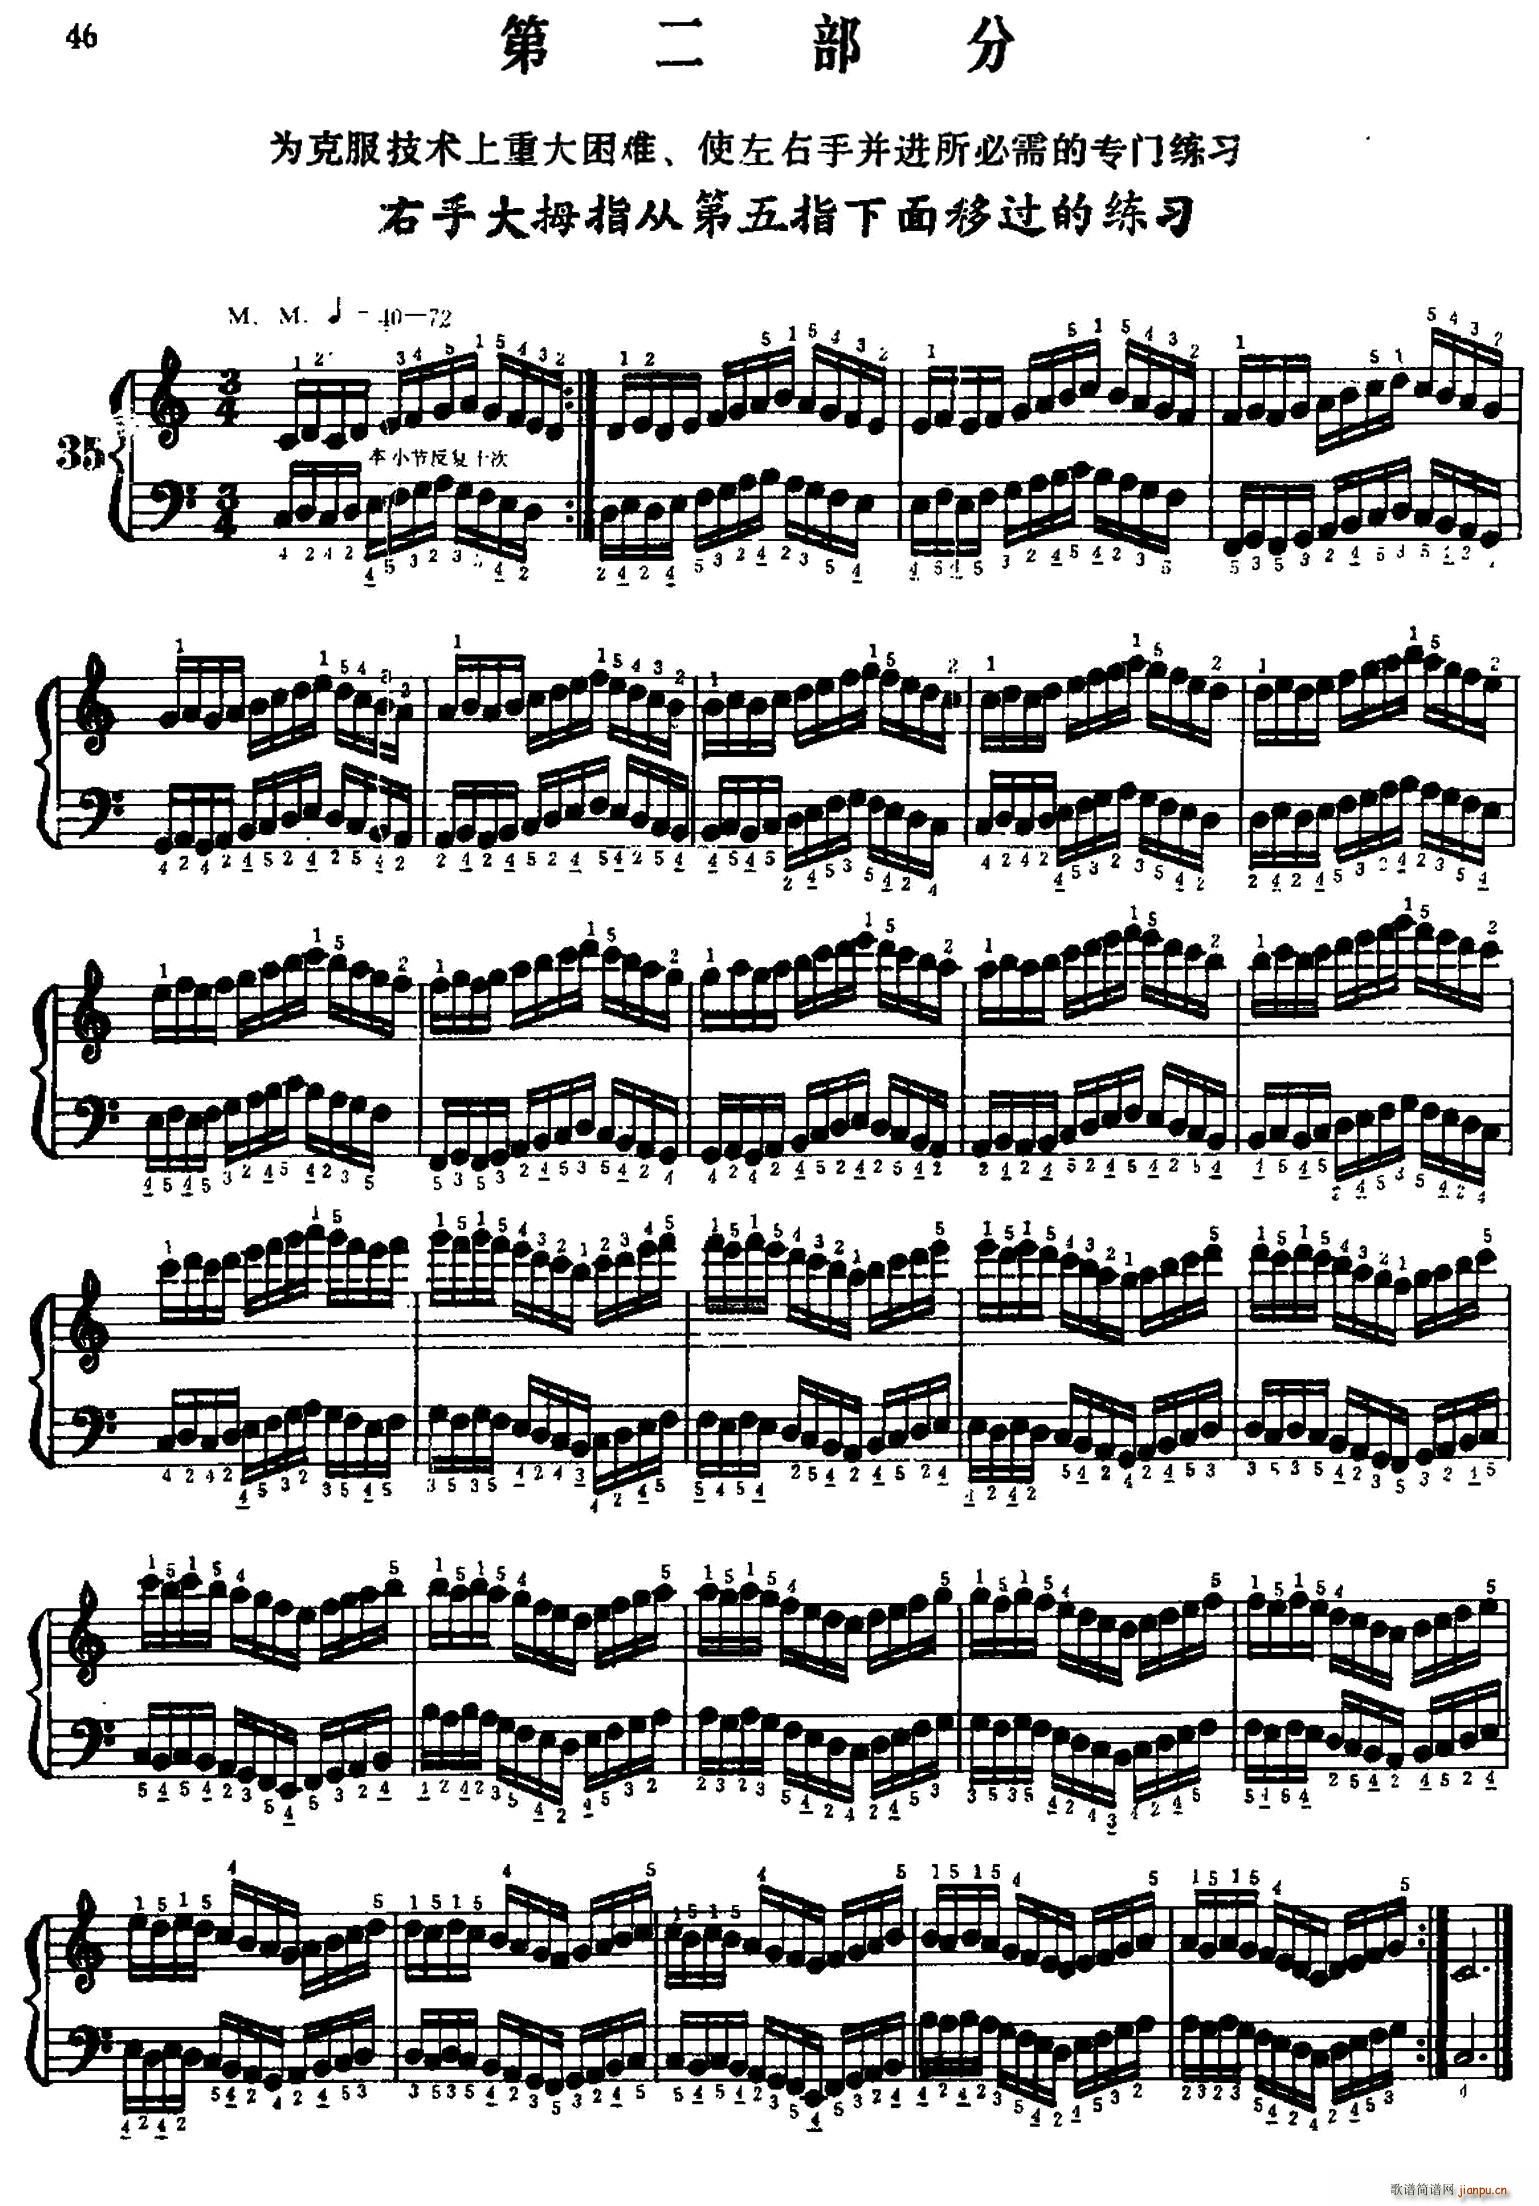 手风琴手指练习 第二部分 右手大拇指从第五指下面移过的练习(手风琴谱)1